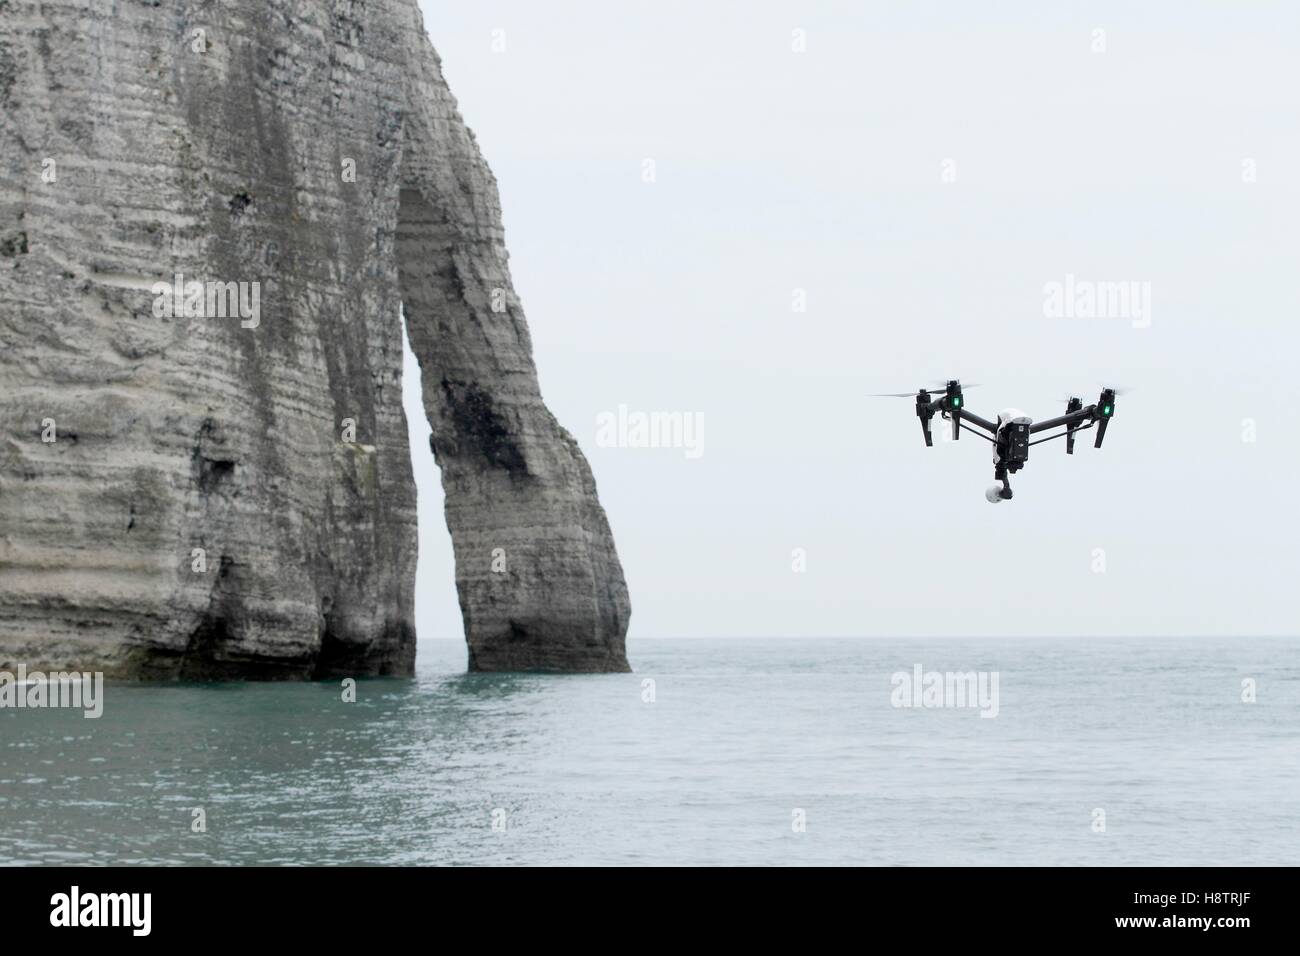 Drohne fliegen in der Nähe der Klippen von Etretat, Normandie, Frankreich  Stockfotografie - Alamy